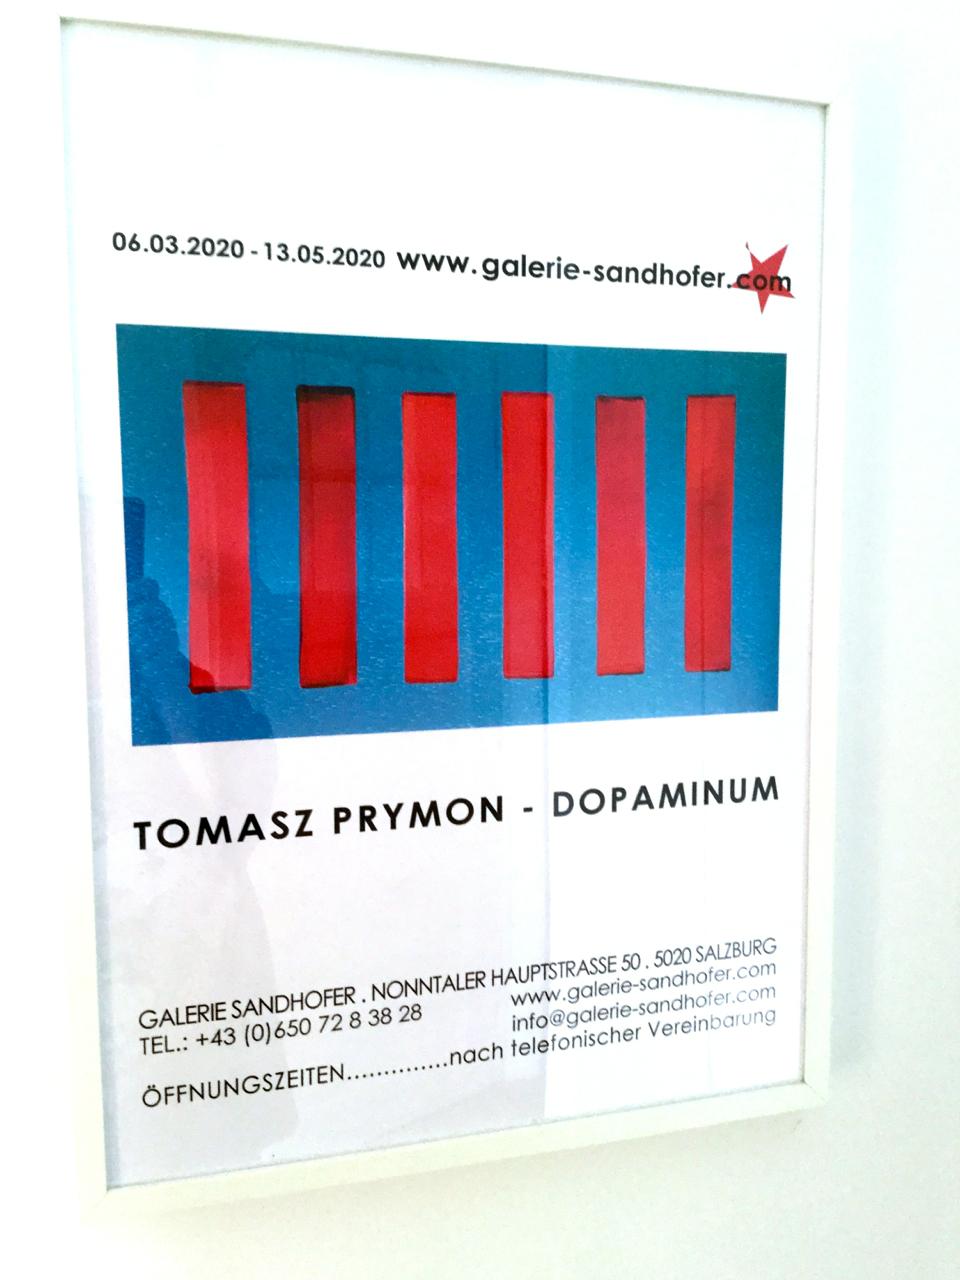 Über Prymon's Ausstellung Dopaminum und seine Gemälde:

